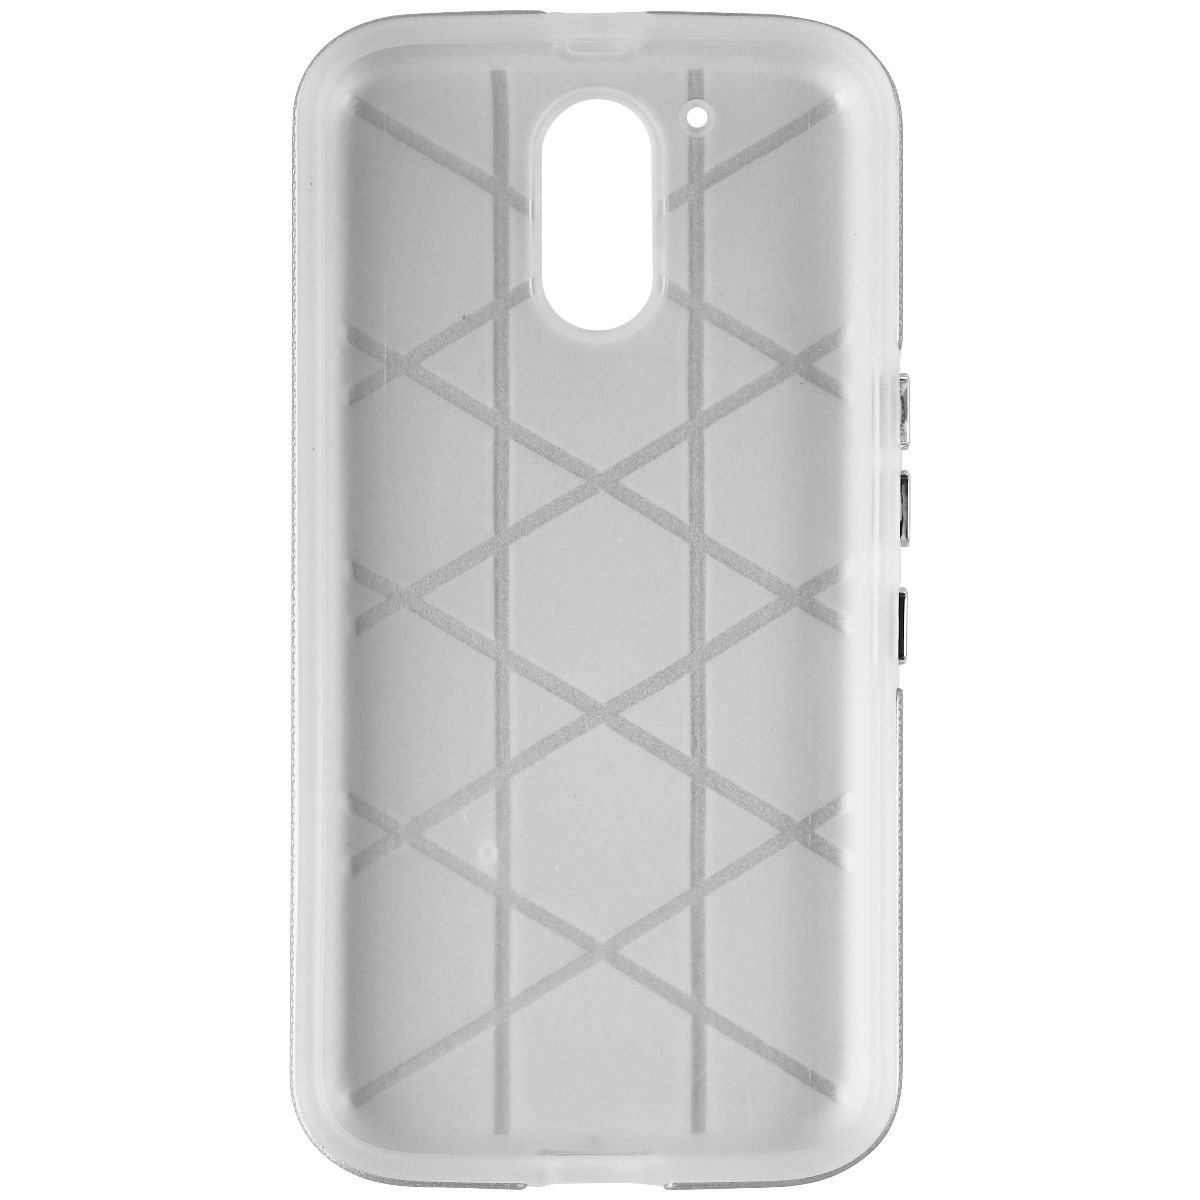 Avoca MobilePro Hardshell Case For Motorola G4 Plus (2016) - Silver/Frost